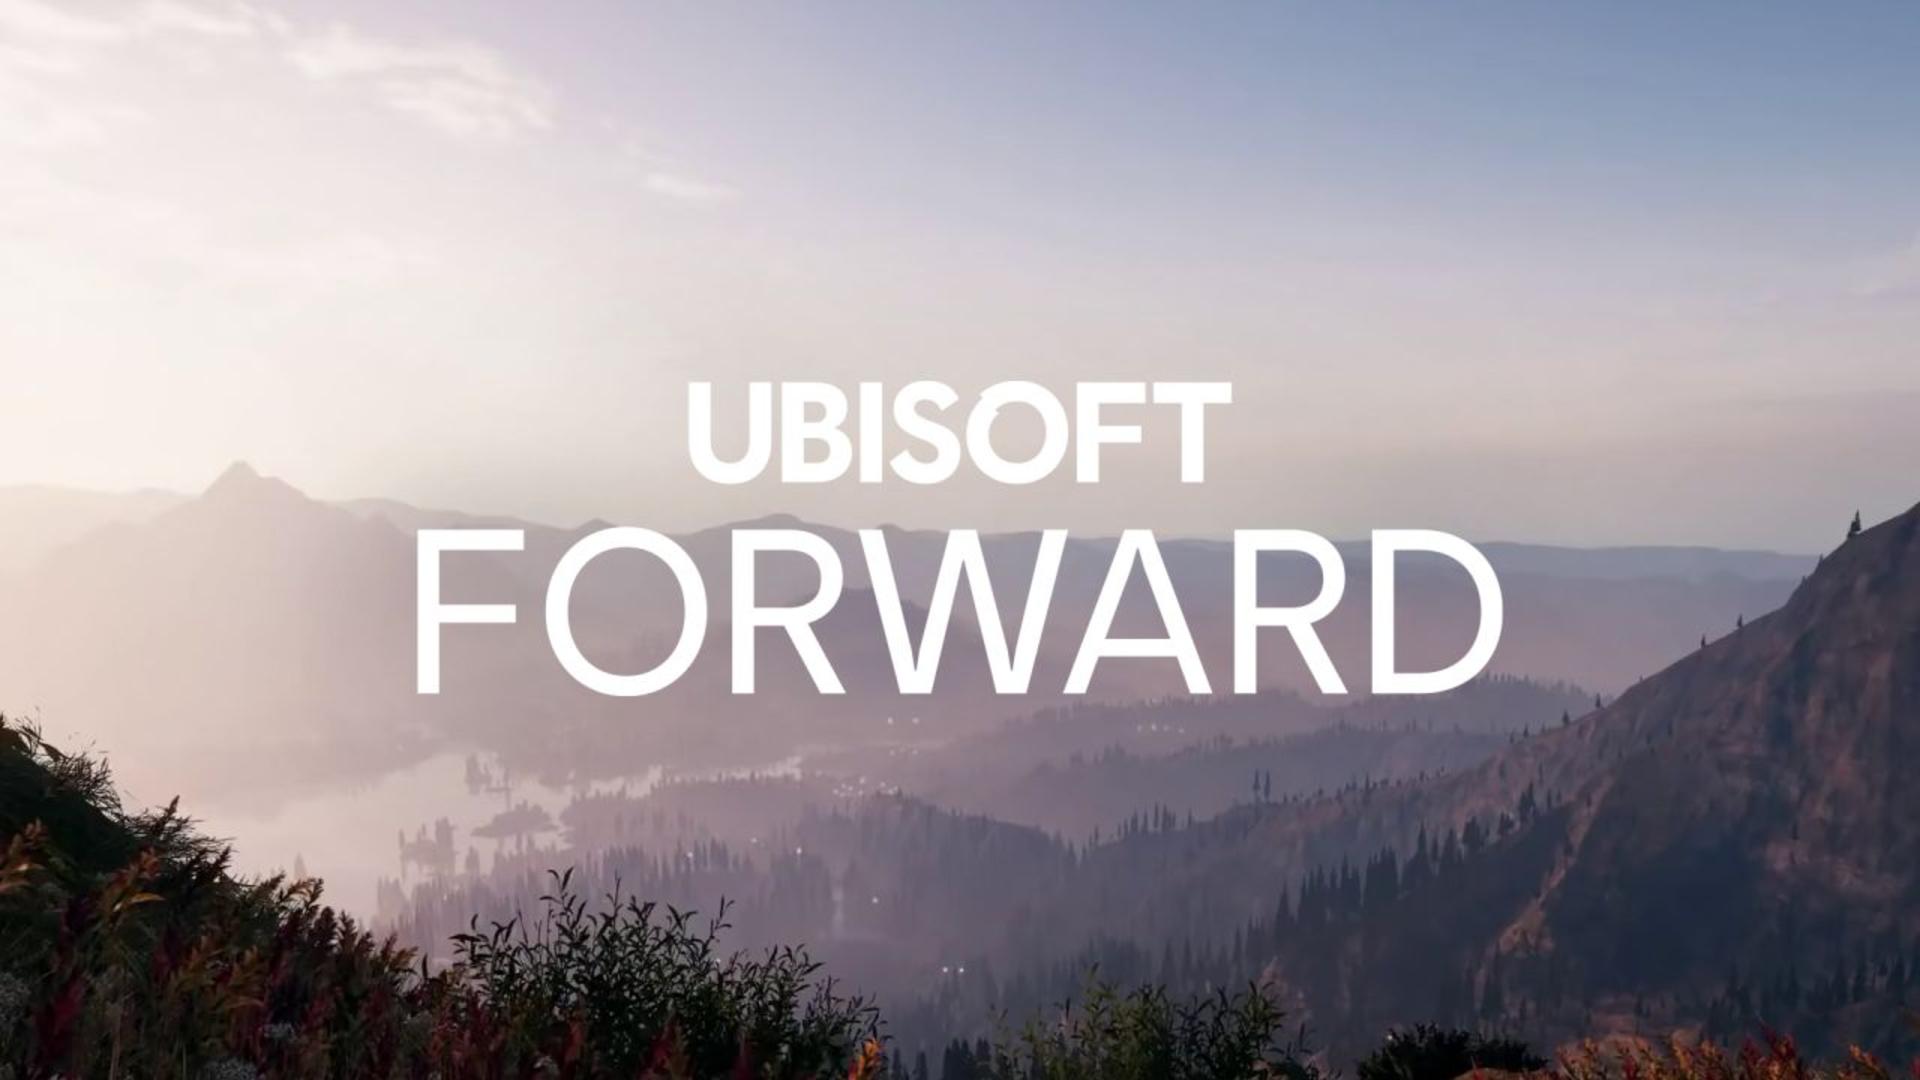 Ubisoft forward será o evento online em julho | f19f21a1 ubisoft forward | apostas | ubisoft forward apostas